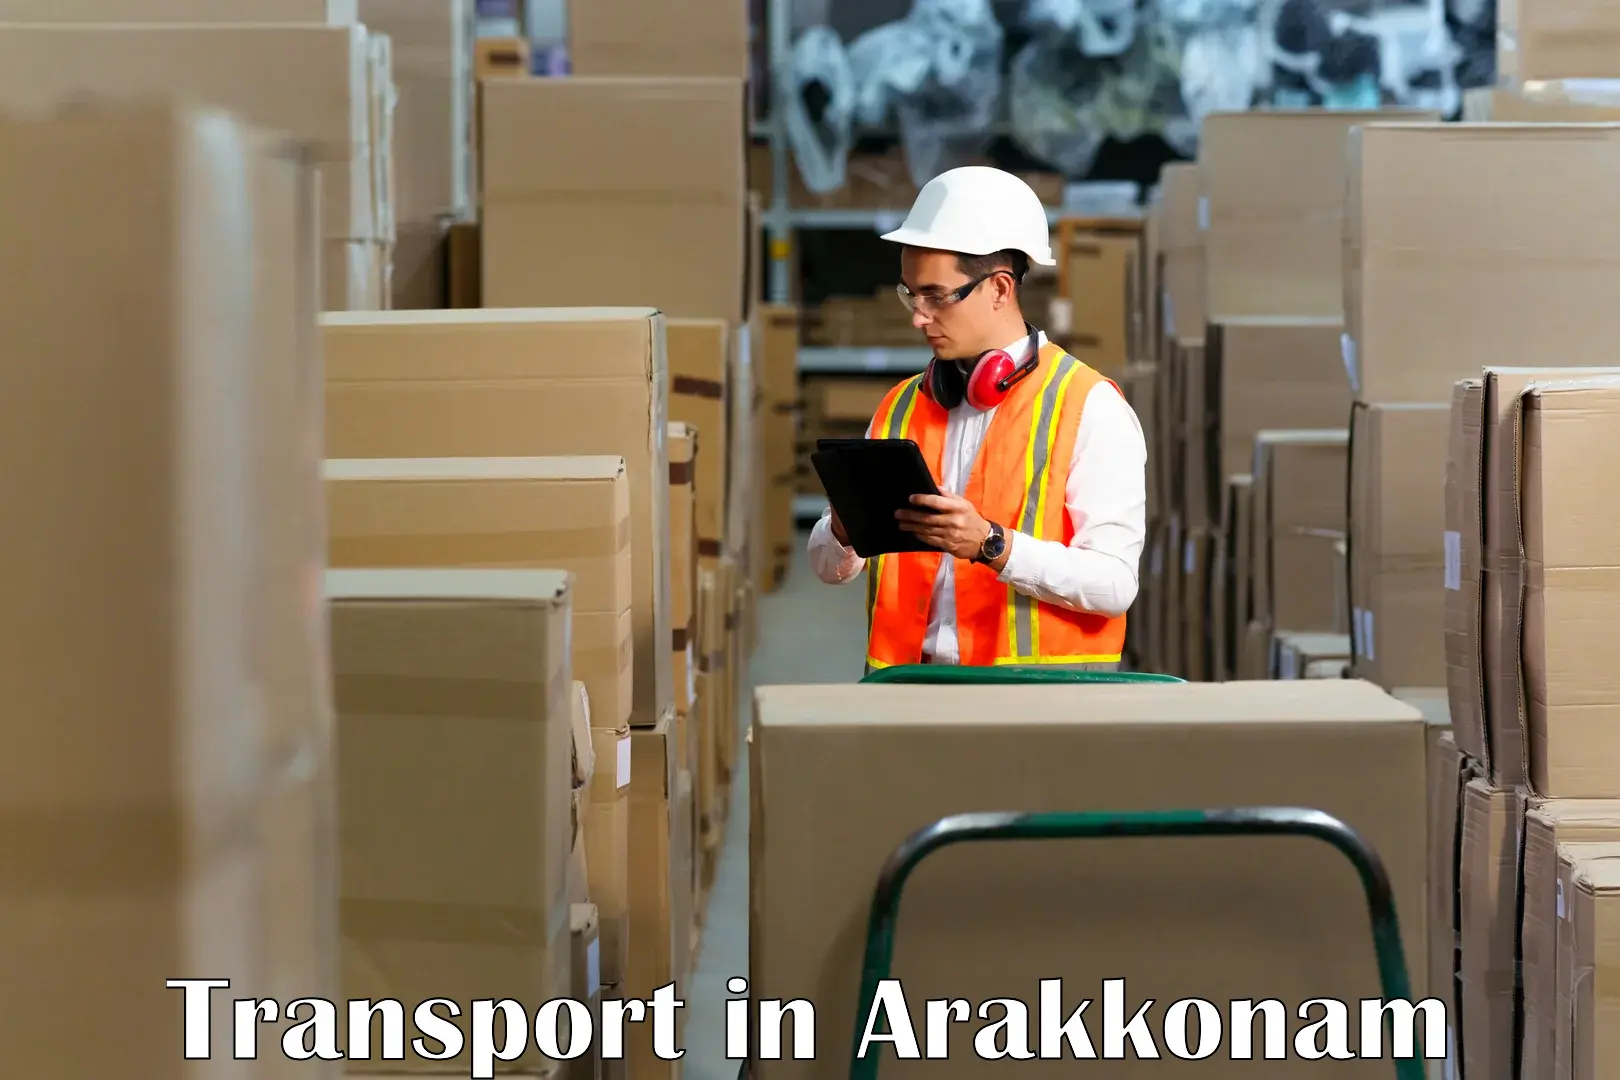 Goods transport services in Arakkonam